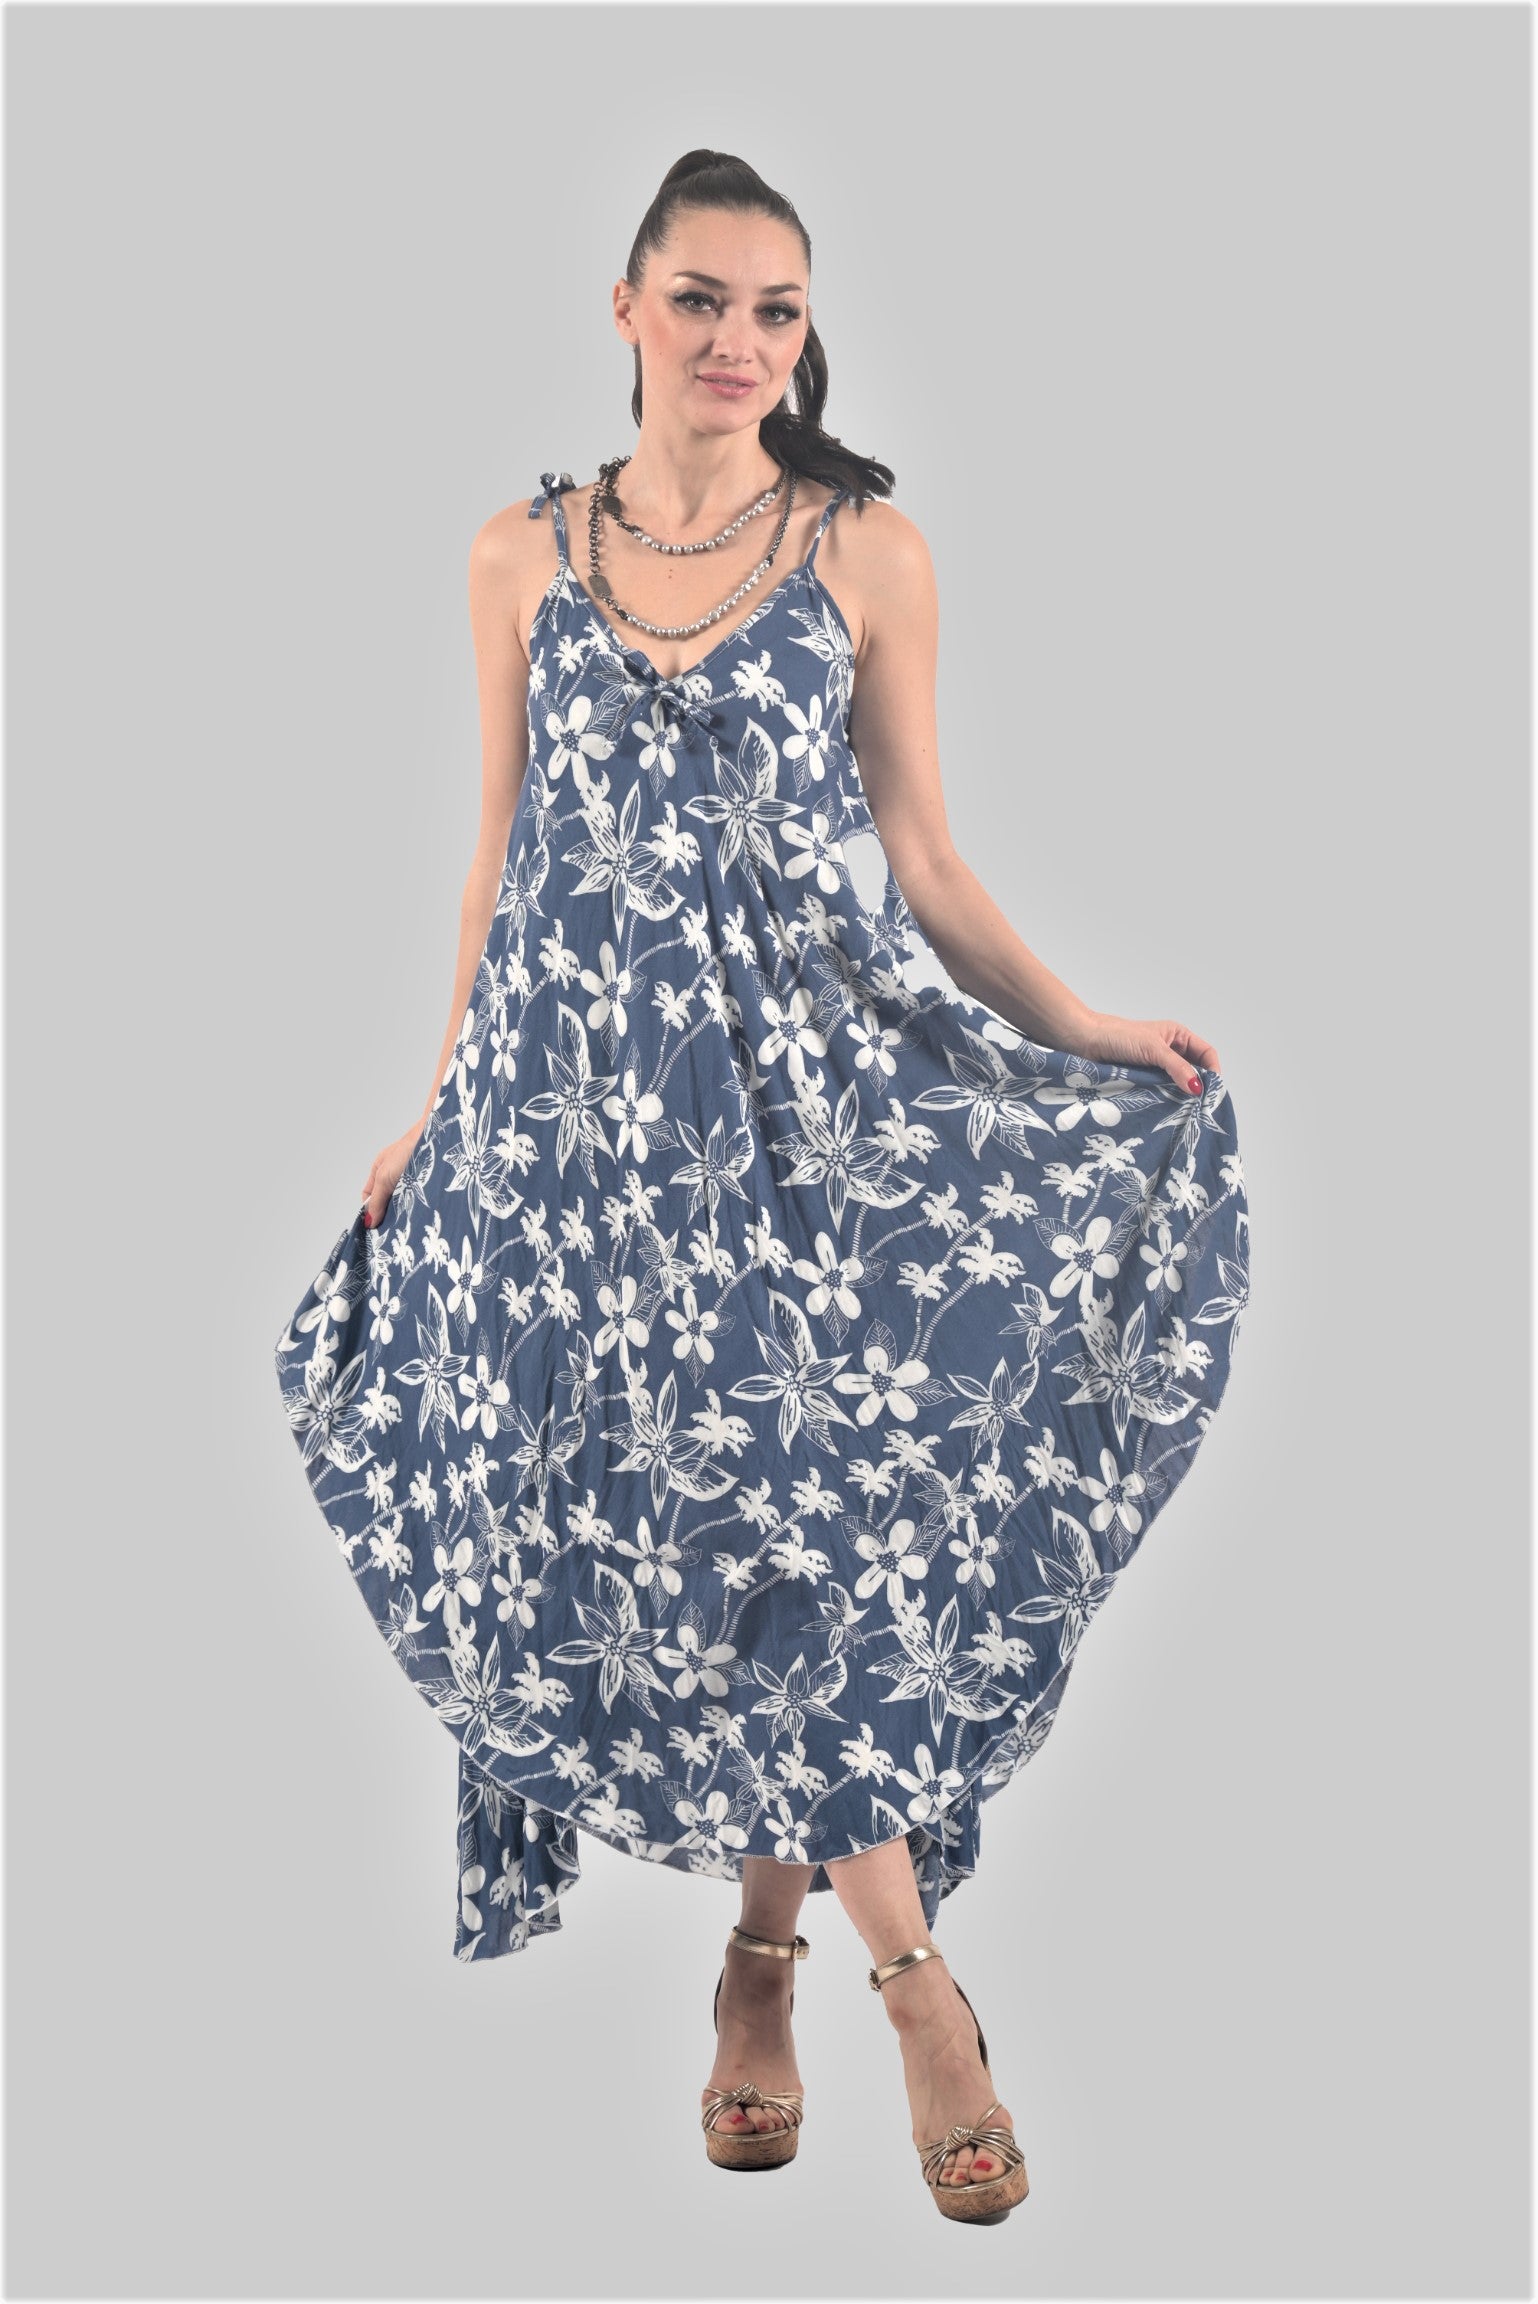 VSK002 Blue Floral Dress